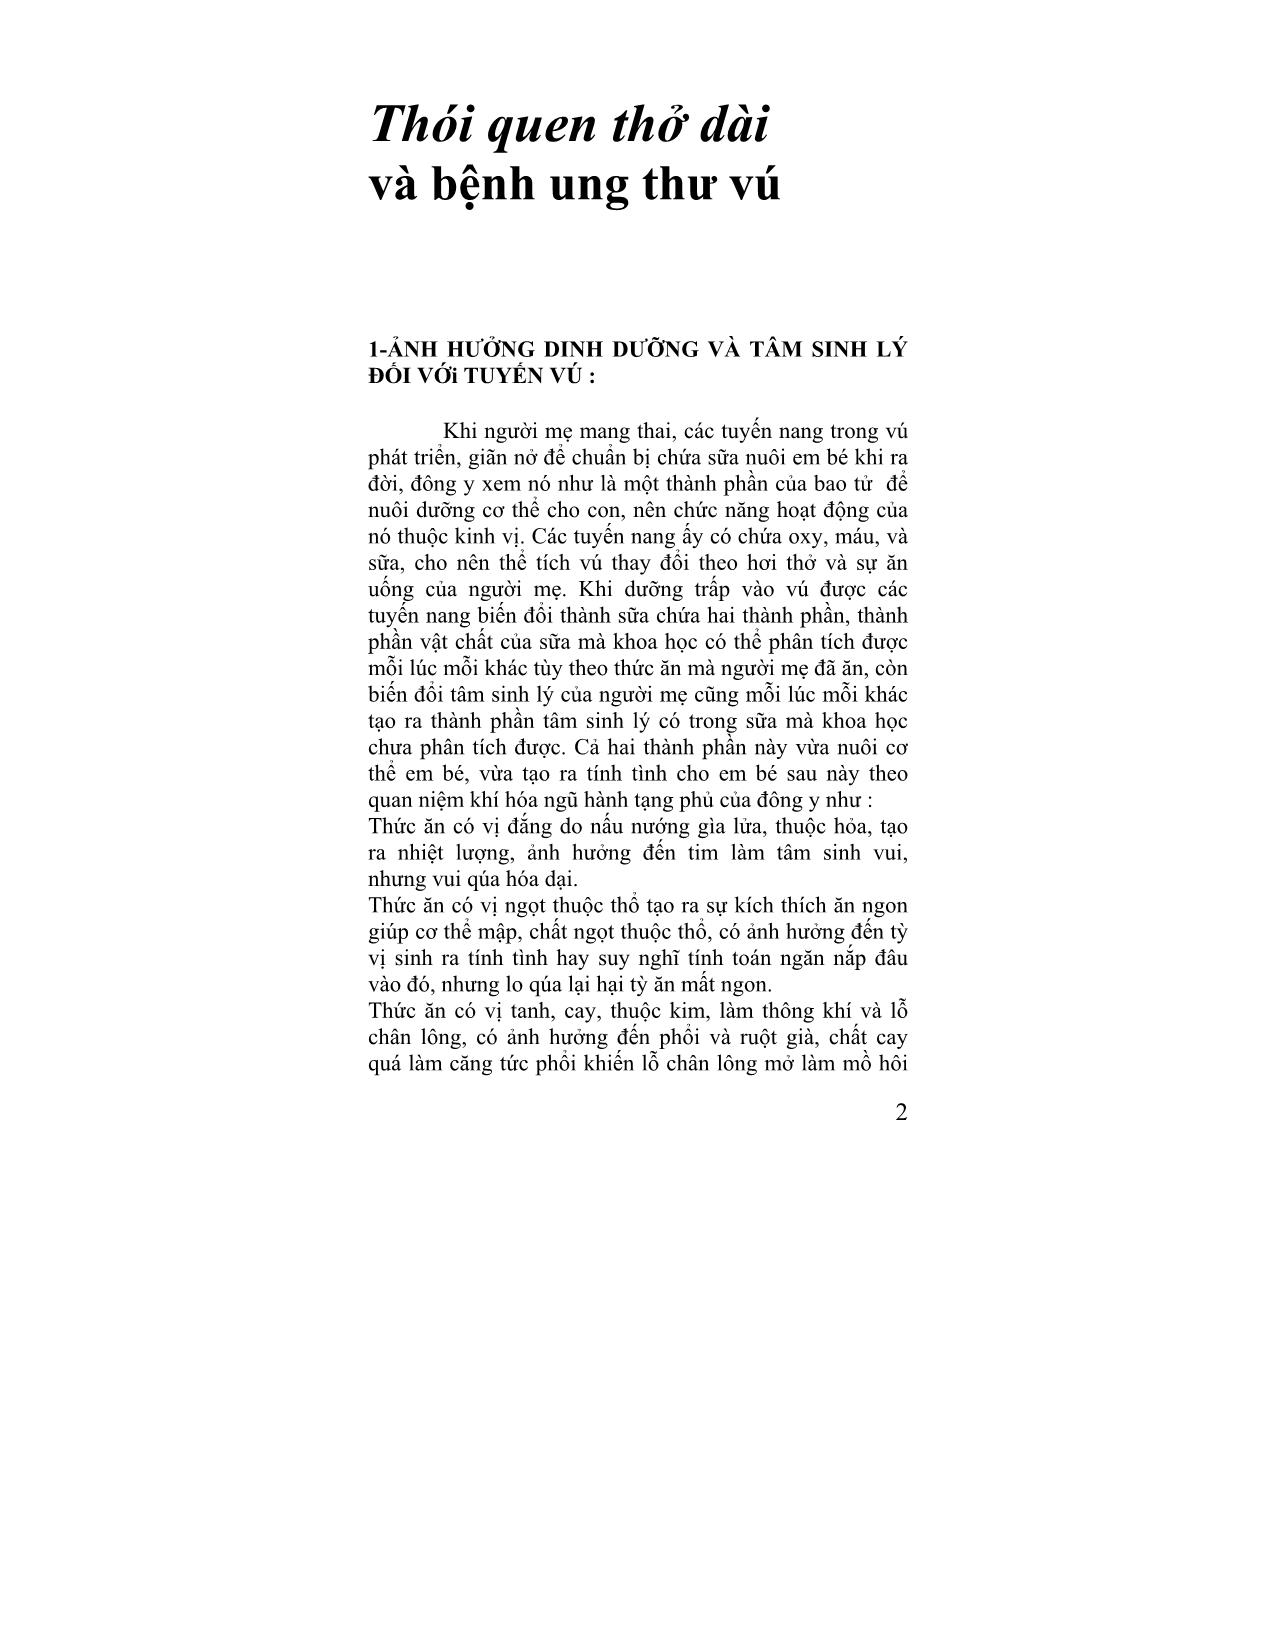 Giáo trình Câu chuyện đông y (Tập 4) trang 2